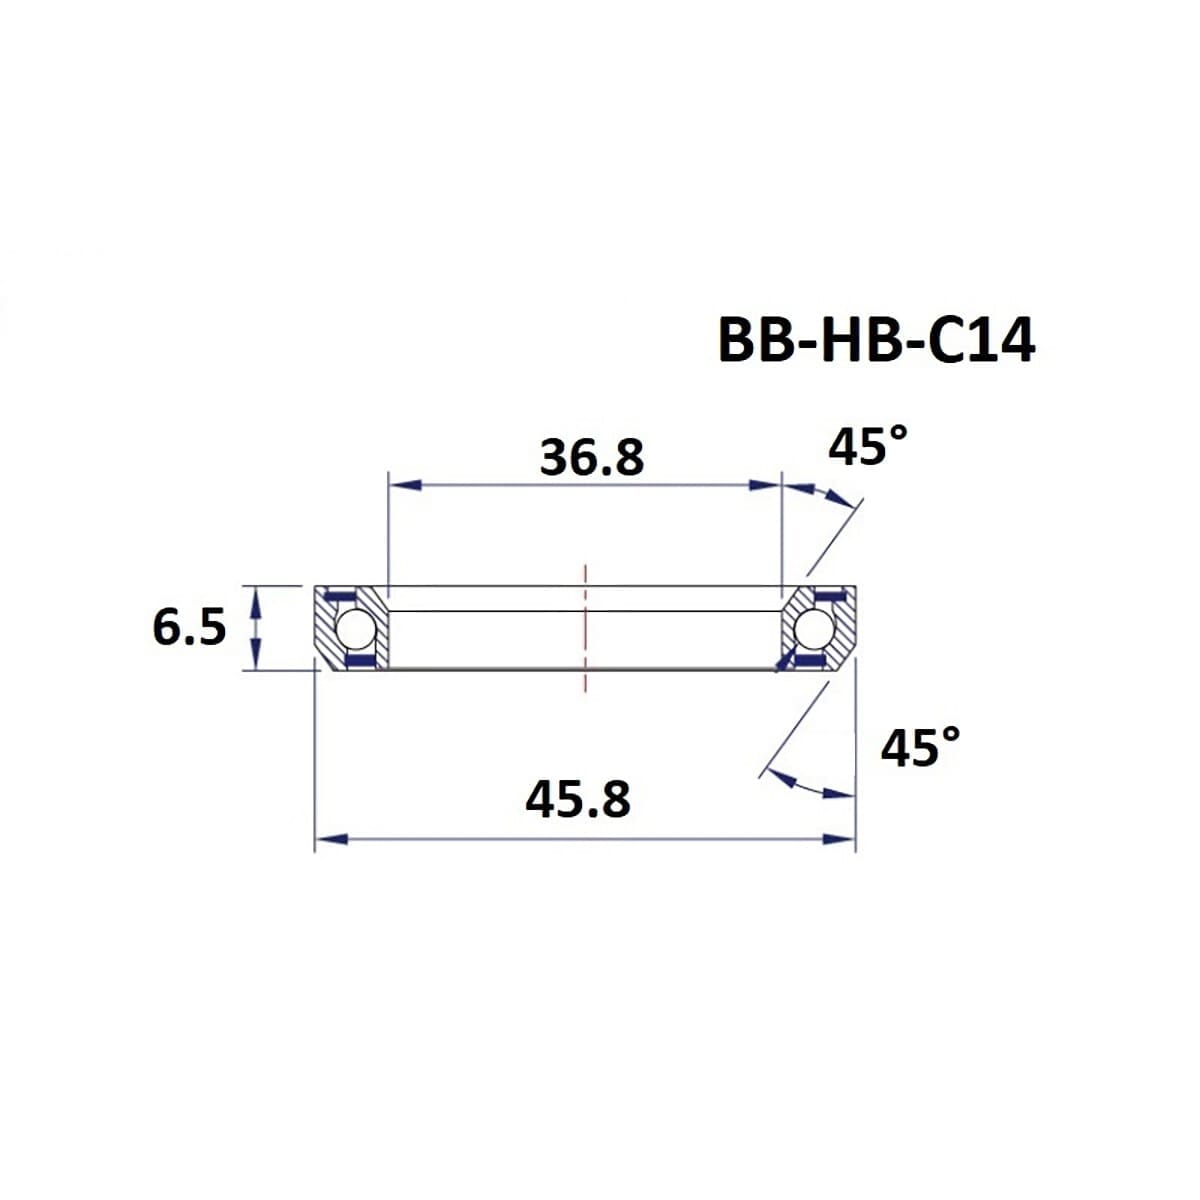 Roulement de Direction BLACK BEARING C14 45/45° (36,8 x 45,8 x 6,5 mm)